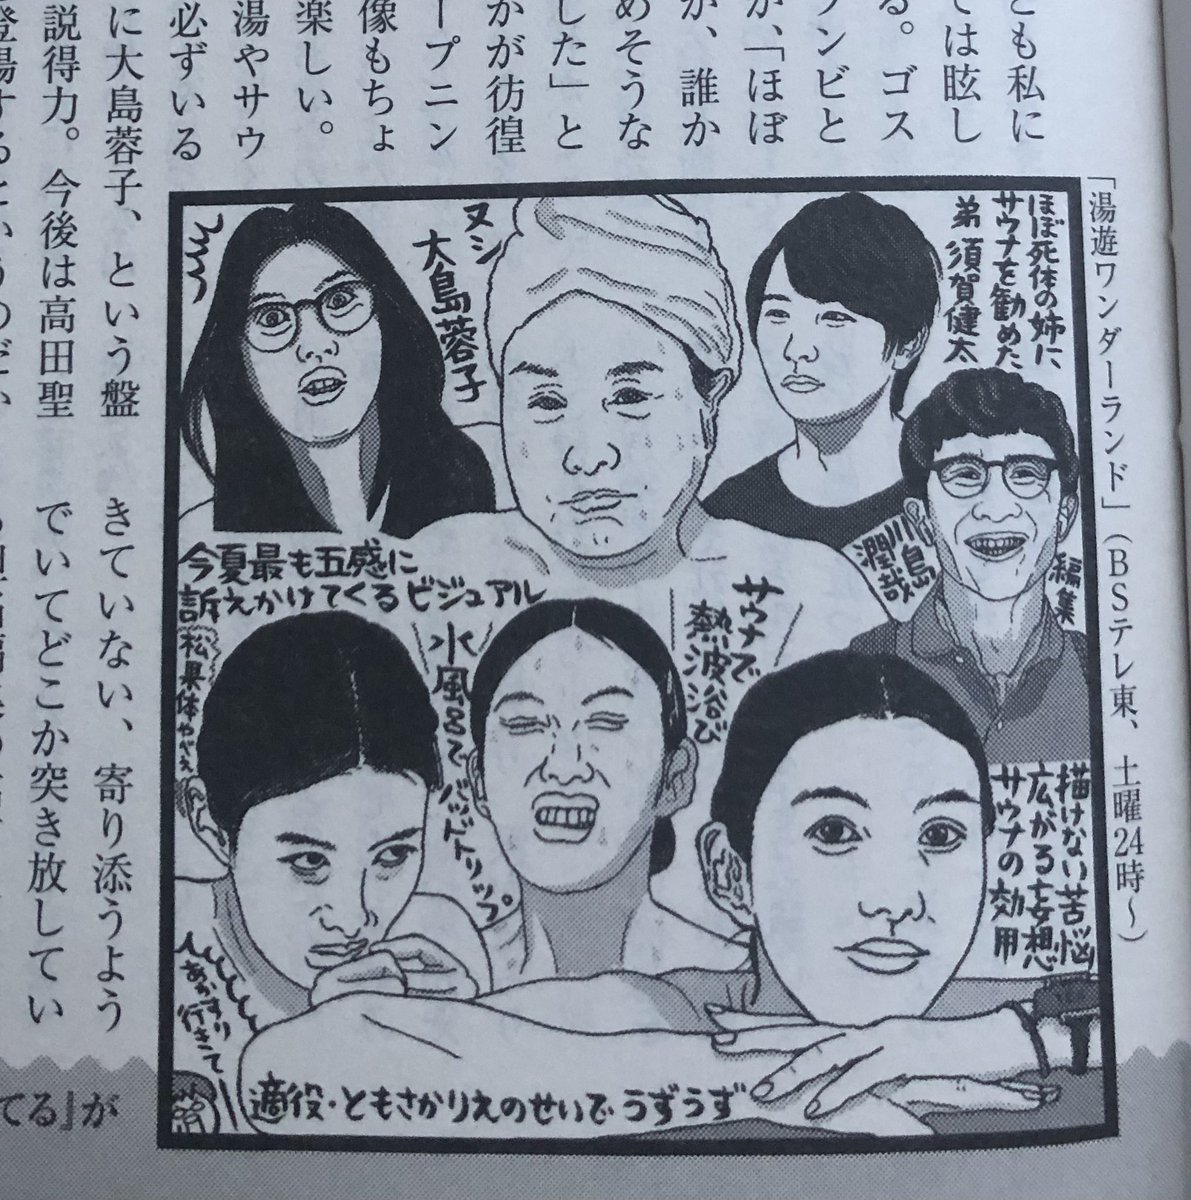 週刊新潮でたまにお隣同士になる吉田潮さんの『TVふうーん録』でドラマ湯遊ワンダーランドを取り上げていただきました。夢がひとつ叶いました。嬉しい。吉田さんどうもありがとうございます。